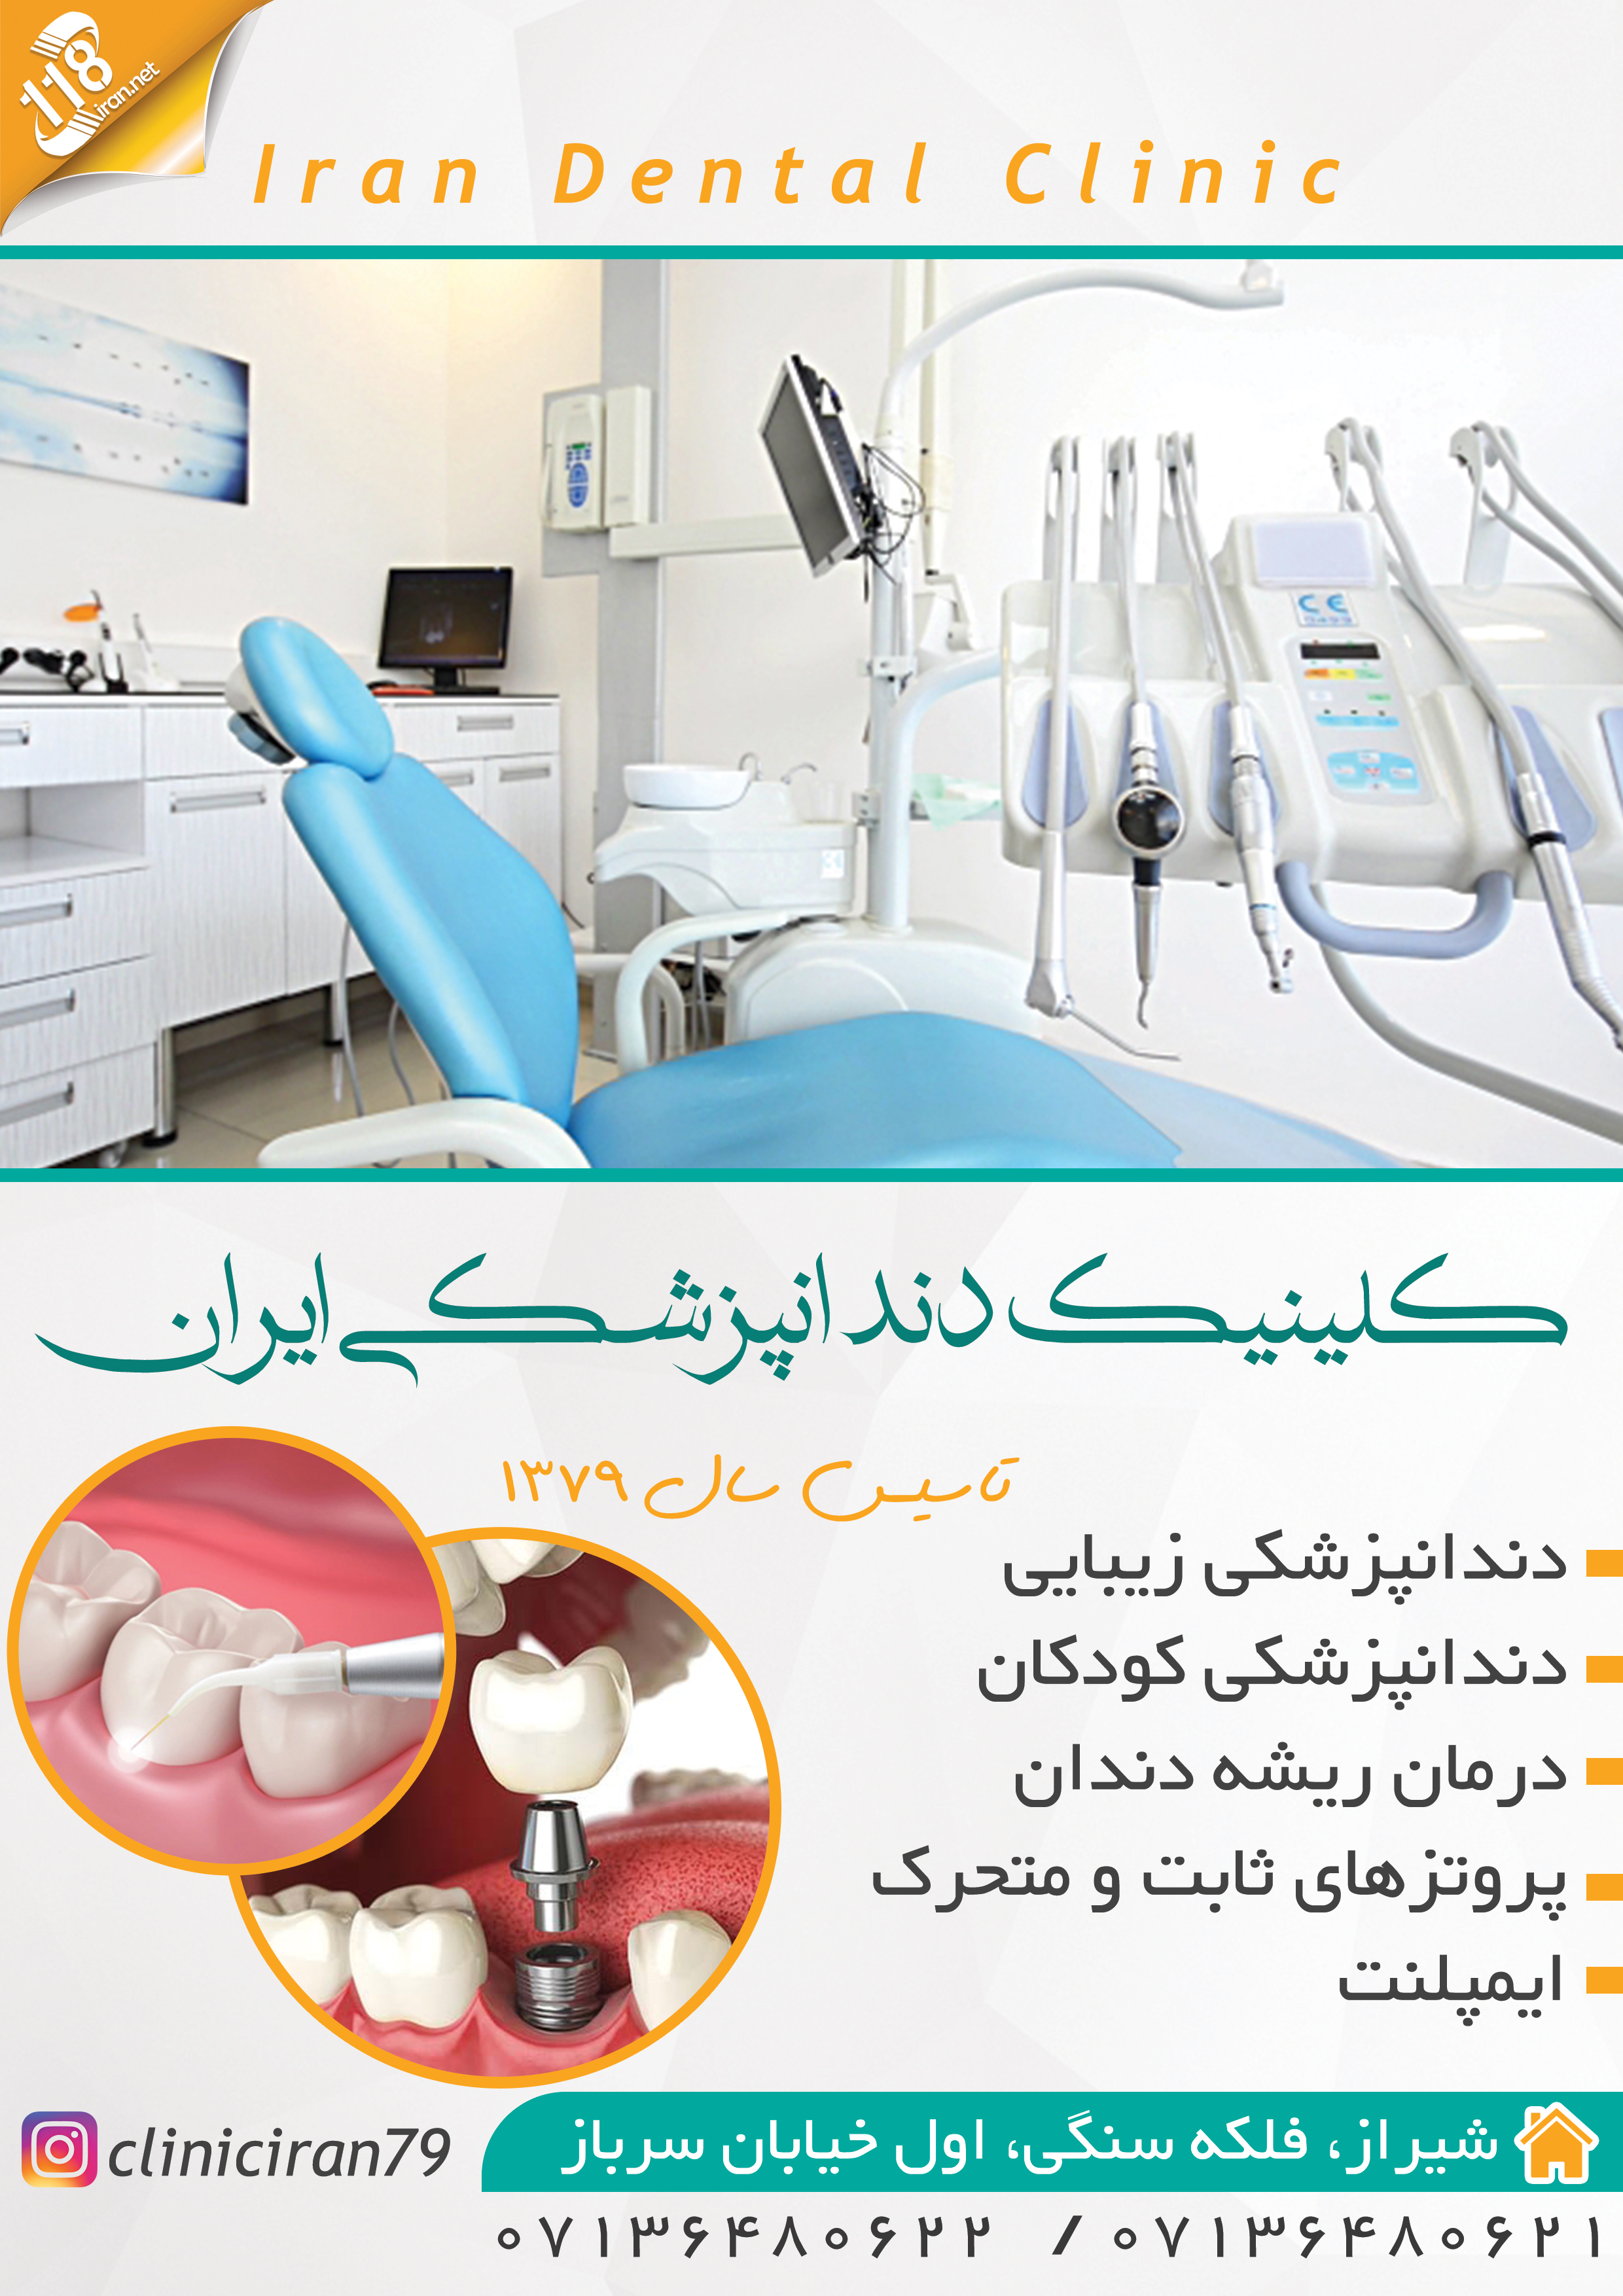  کلینیک دندانپزشکی ایران در شیراز